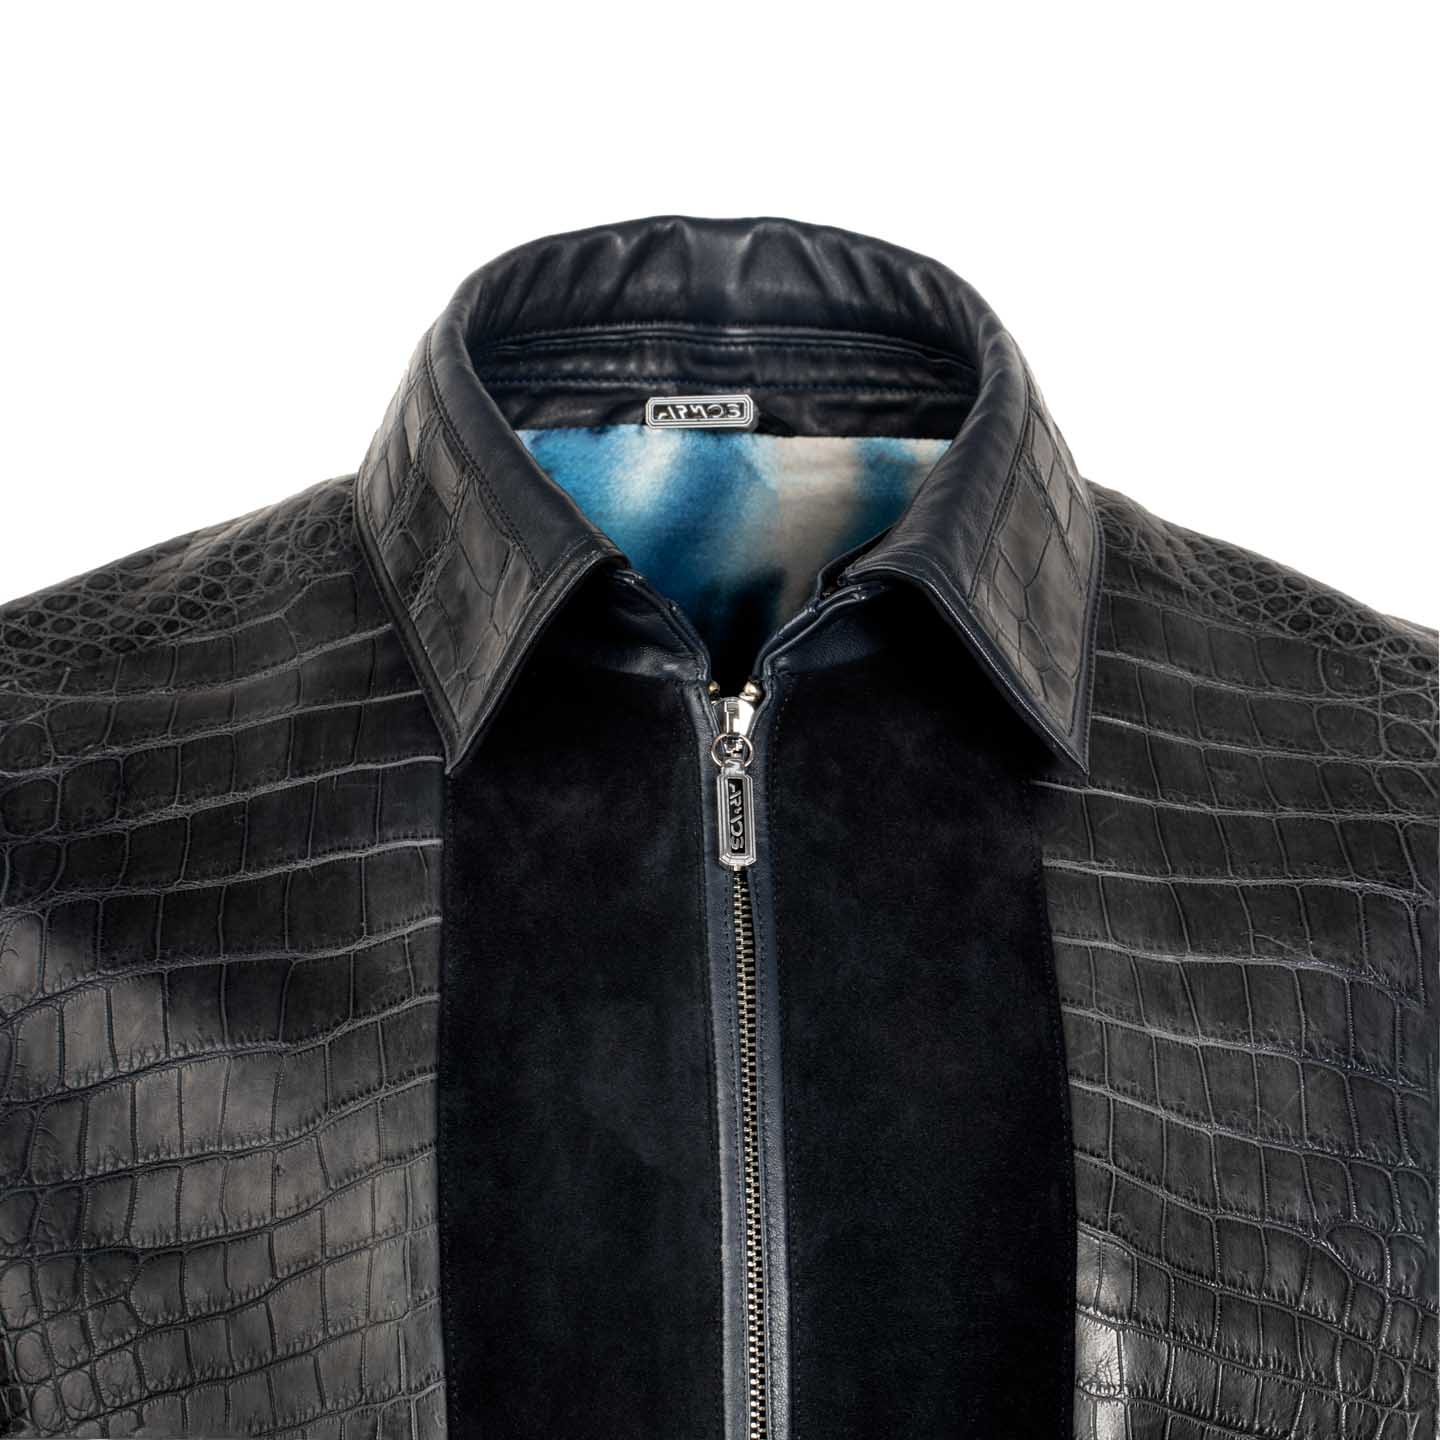 Dark blue jacket